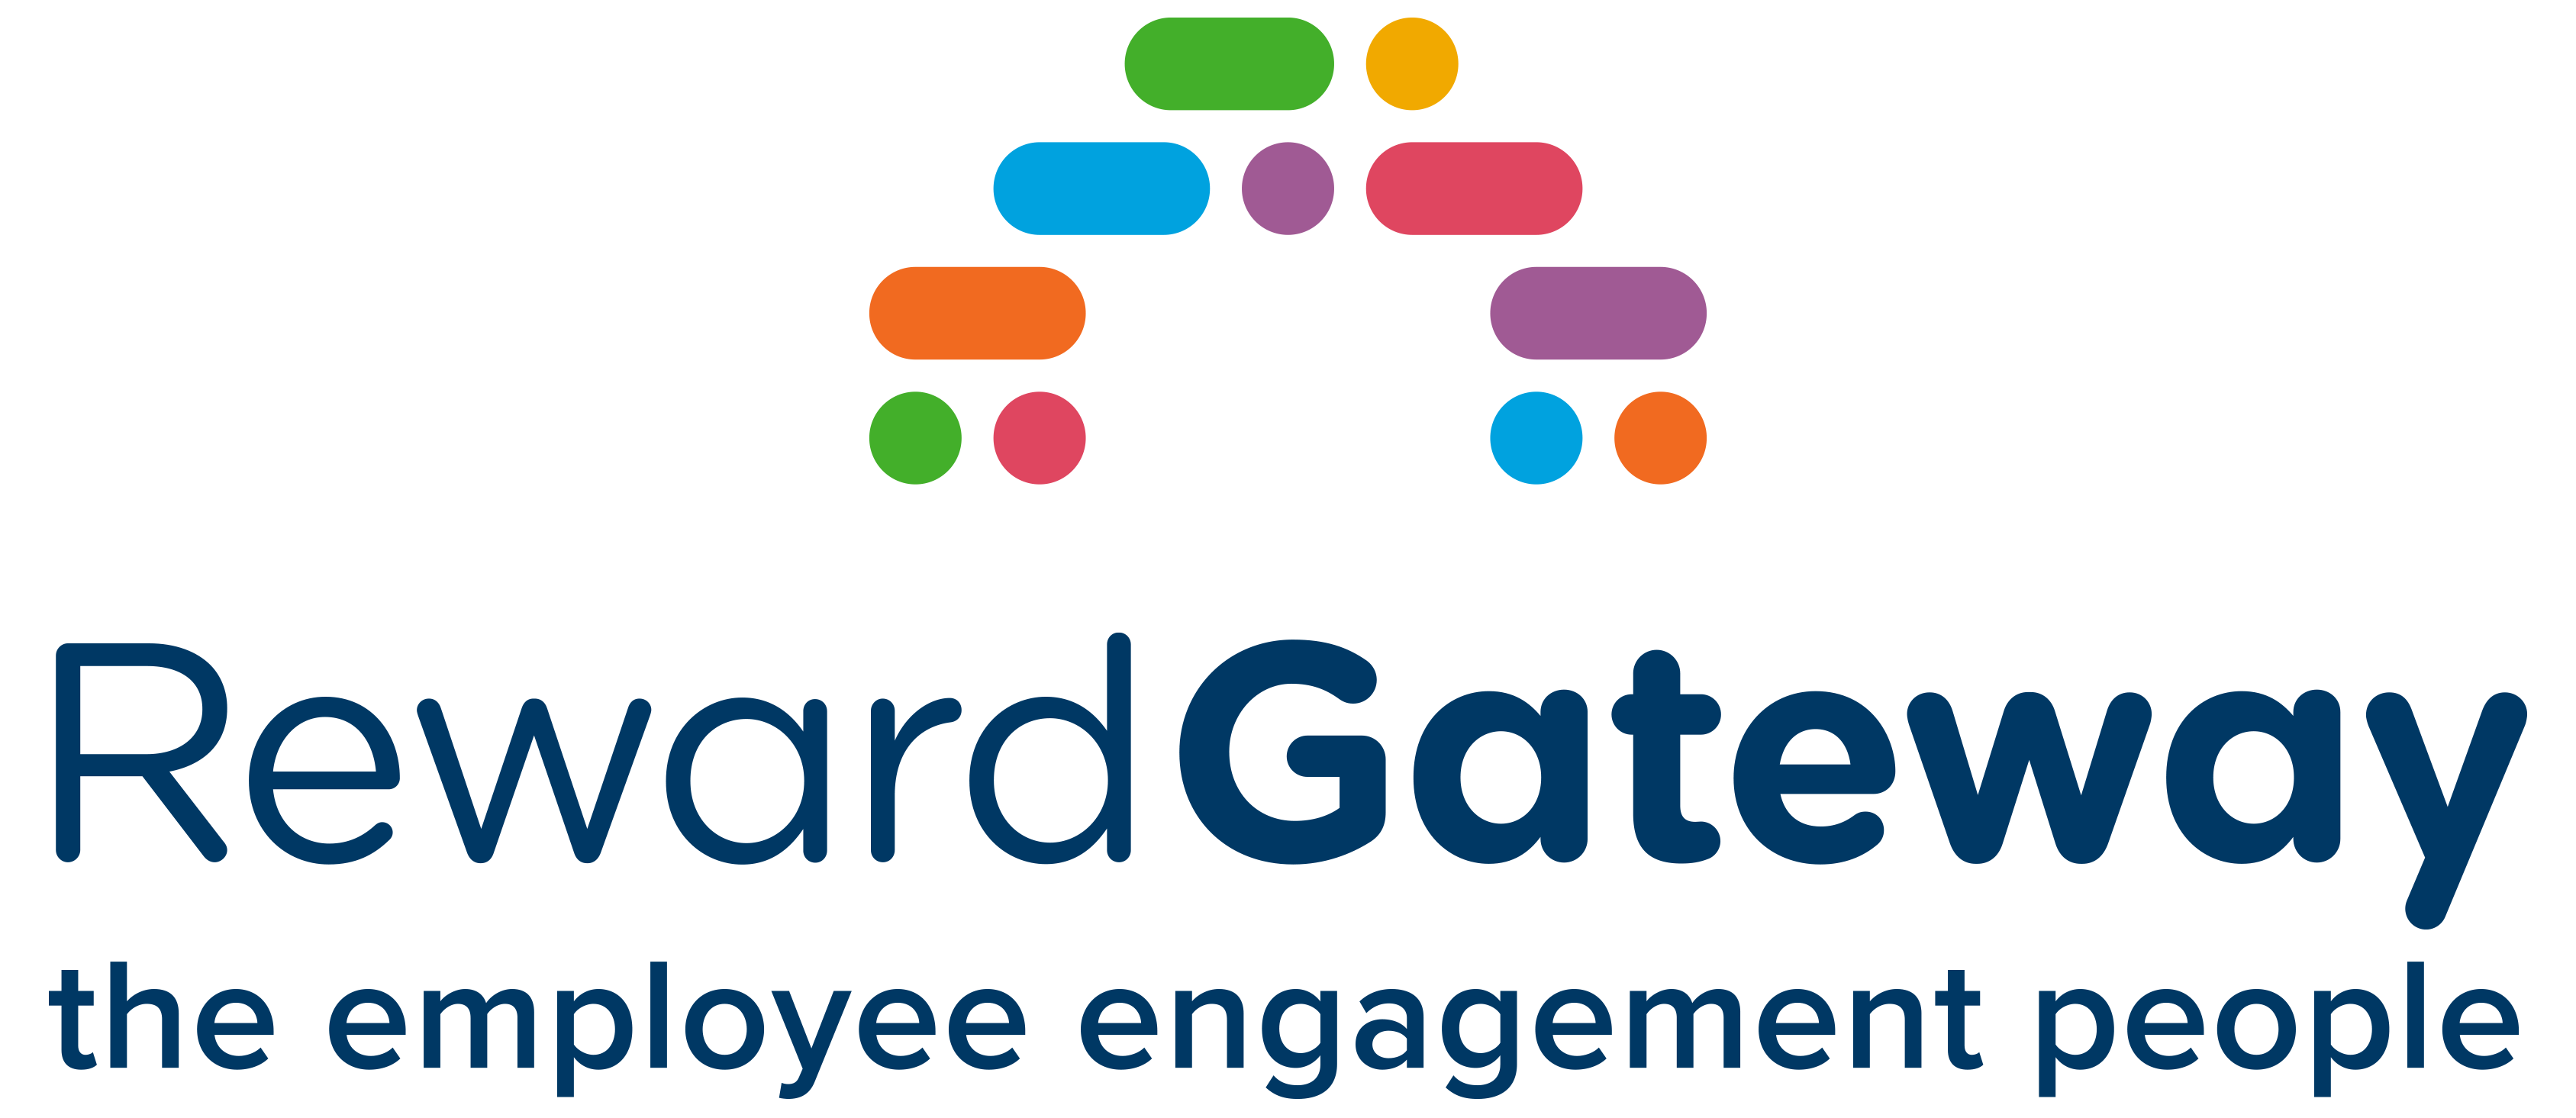 reward gateway logo